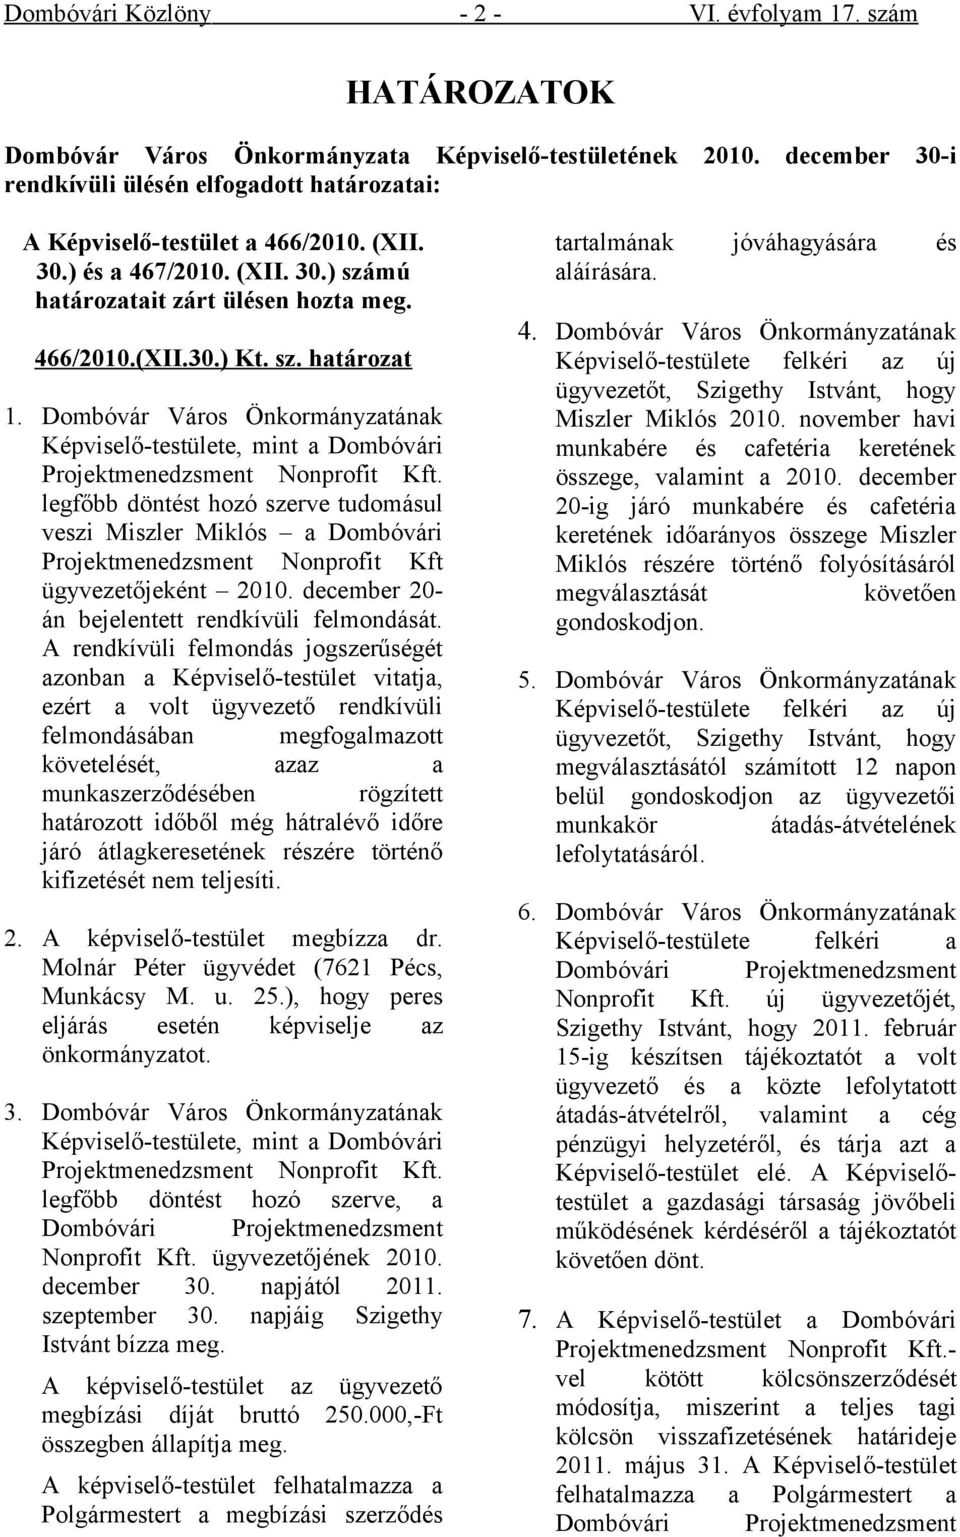 Dombóvár Város Önkormányzatának Képviselő-testülete, mint a Dombóvári Projektmenedzsment Nonprofit Kft.